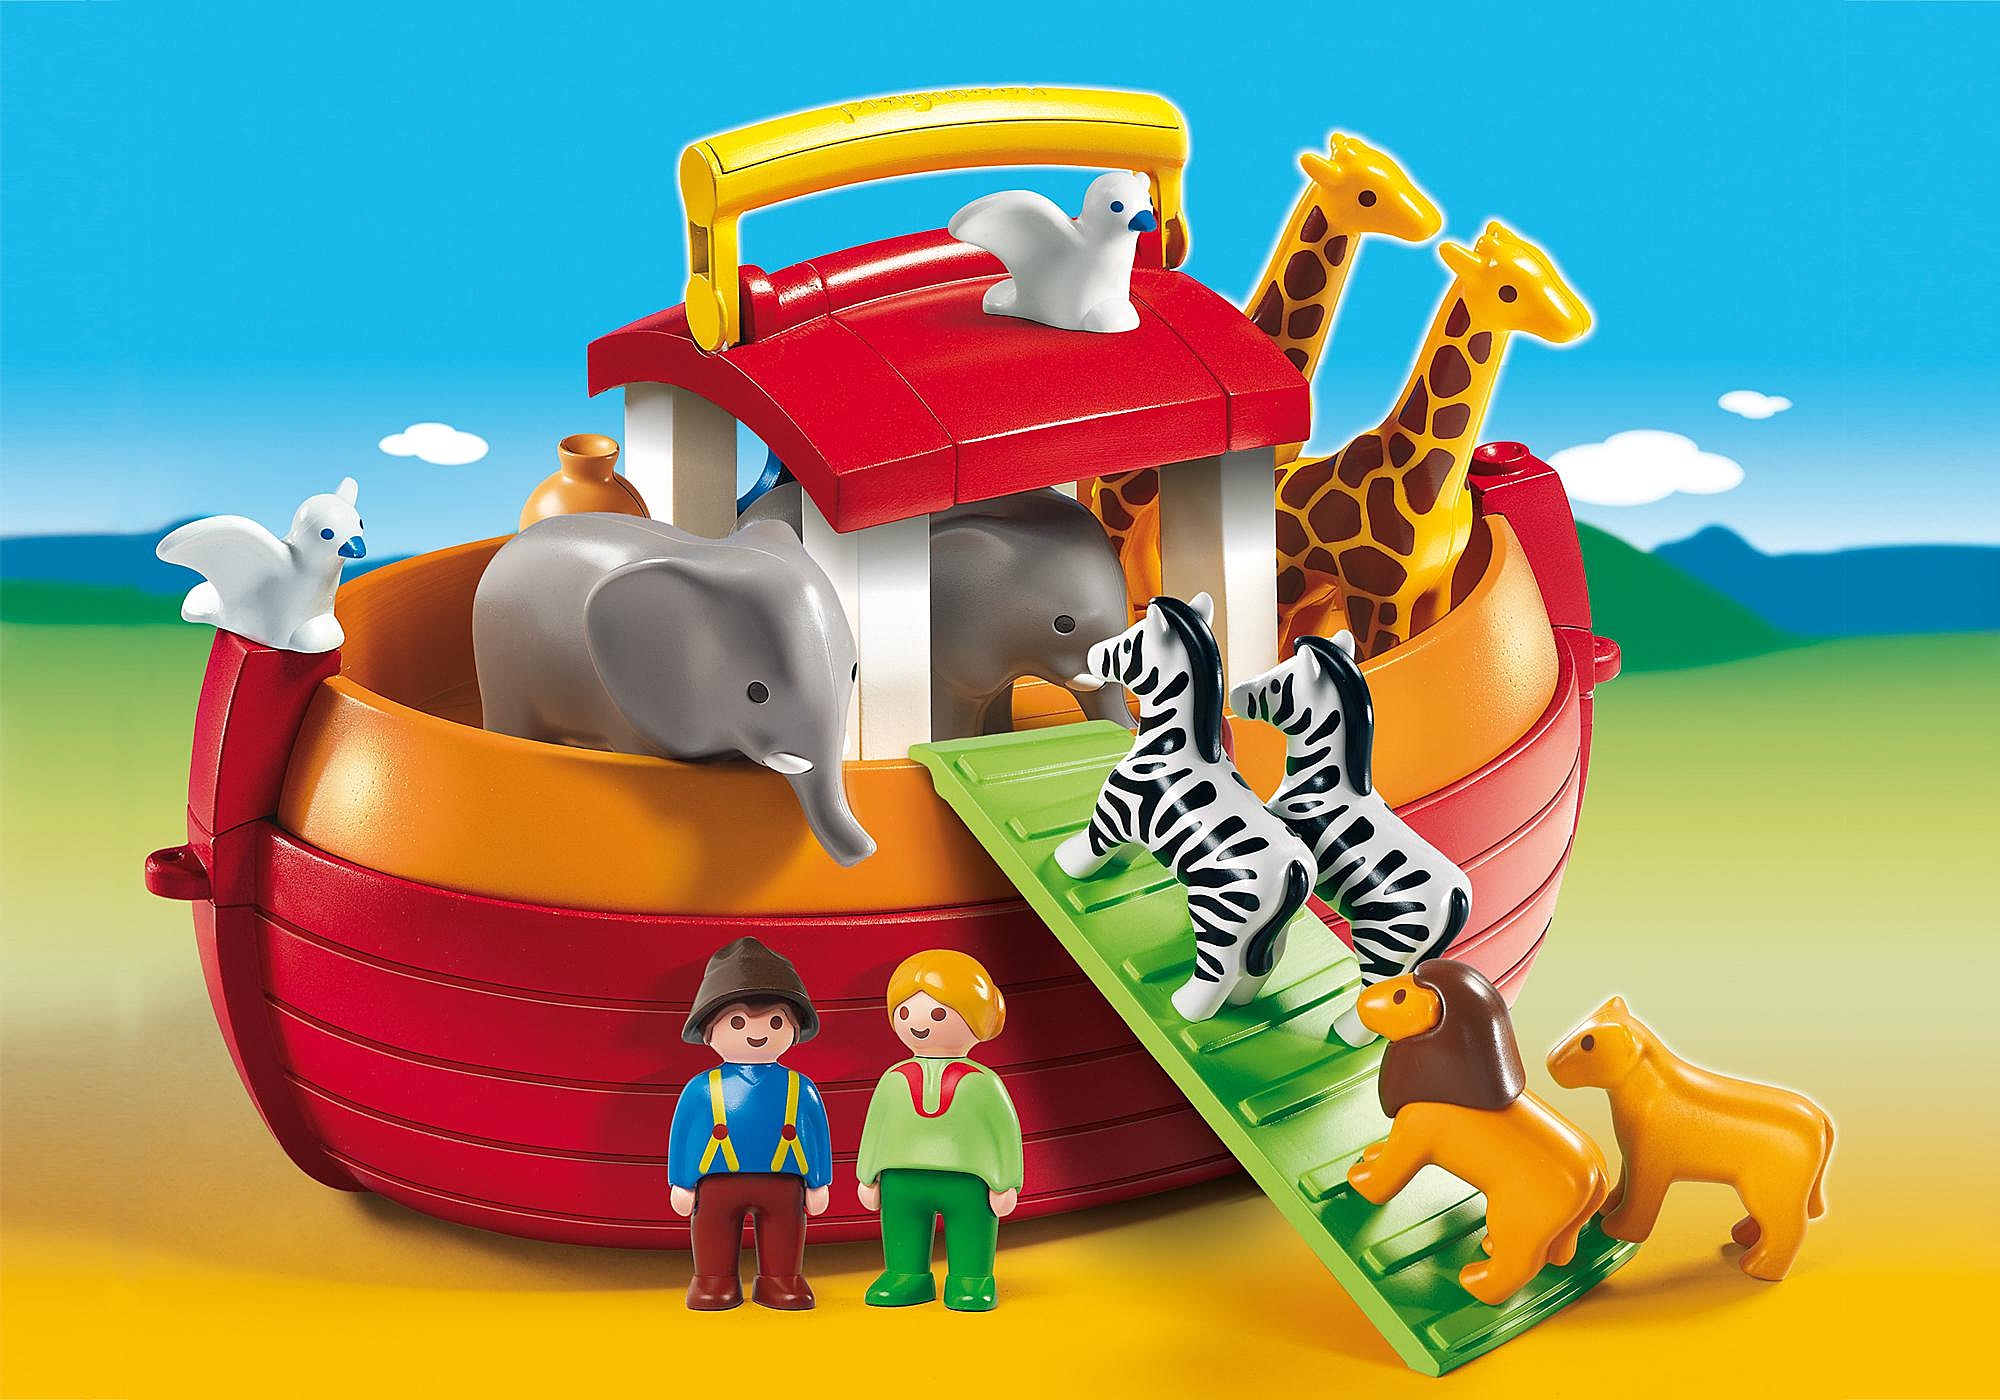 Playmobil - Arche de Noé avec animaux de la savane